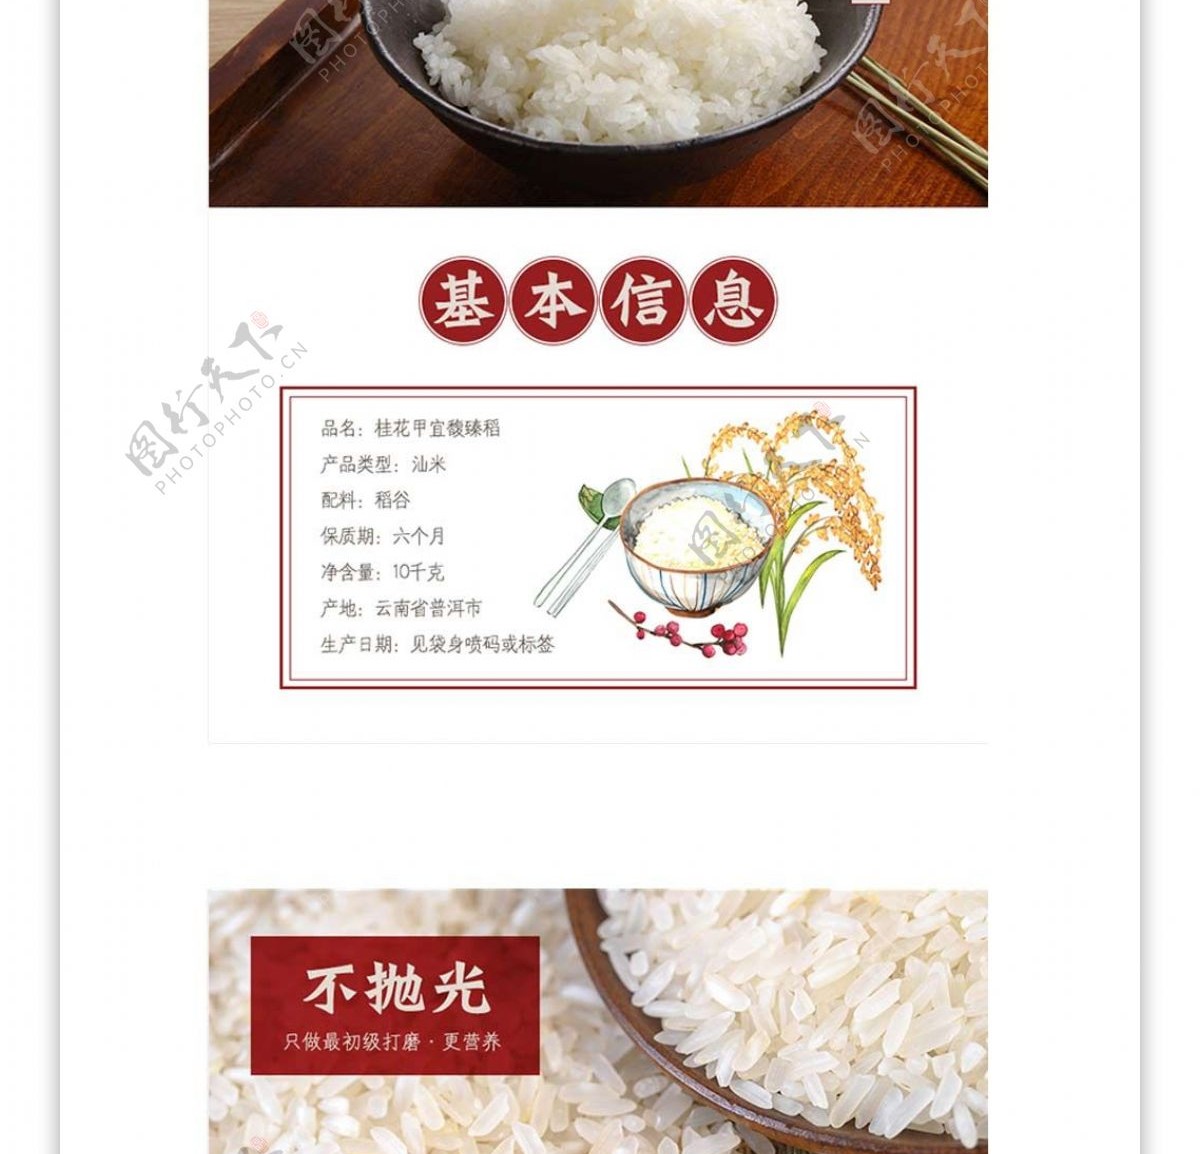 大米产品详情页